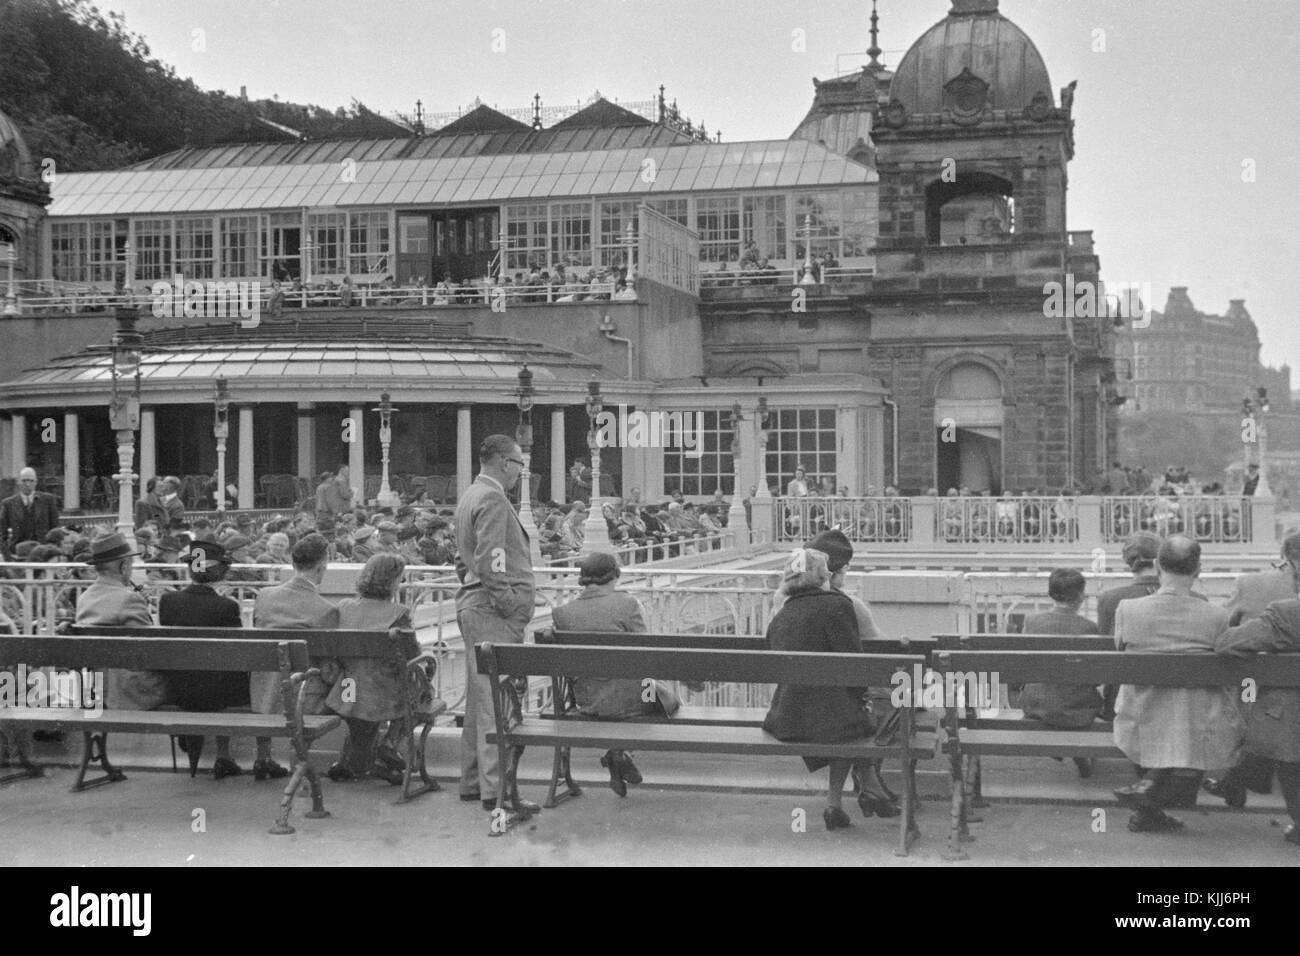 Immagine presa durante il 1940s che mostra la Spa a Scarborough in North Yorkshire, Inghilterra.Scarborough Spa è una Grade II * listed building. Foto Stock